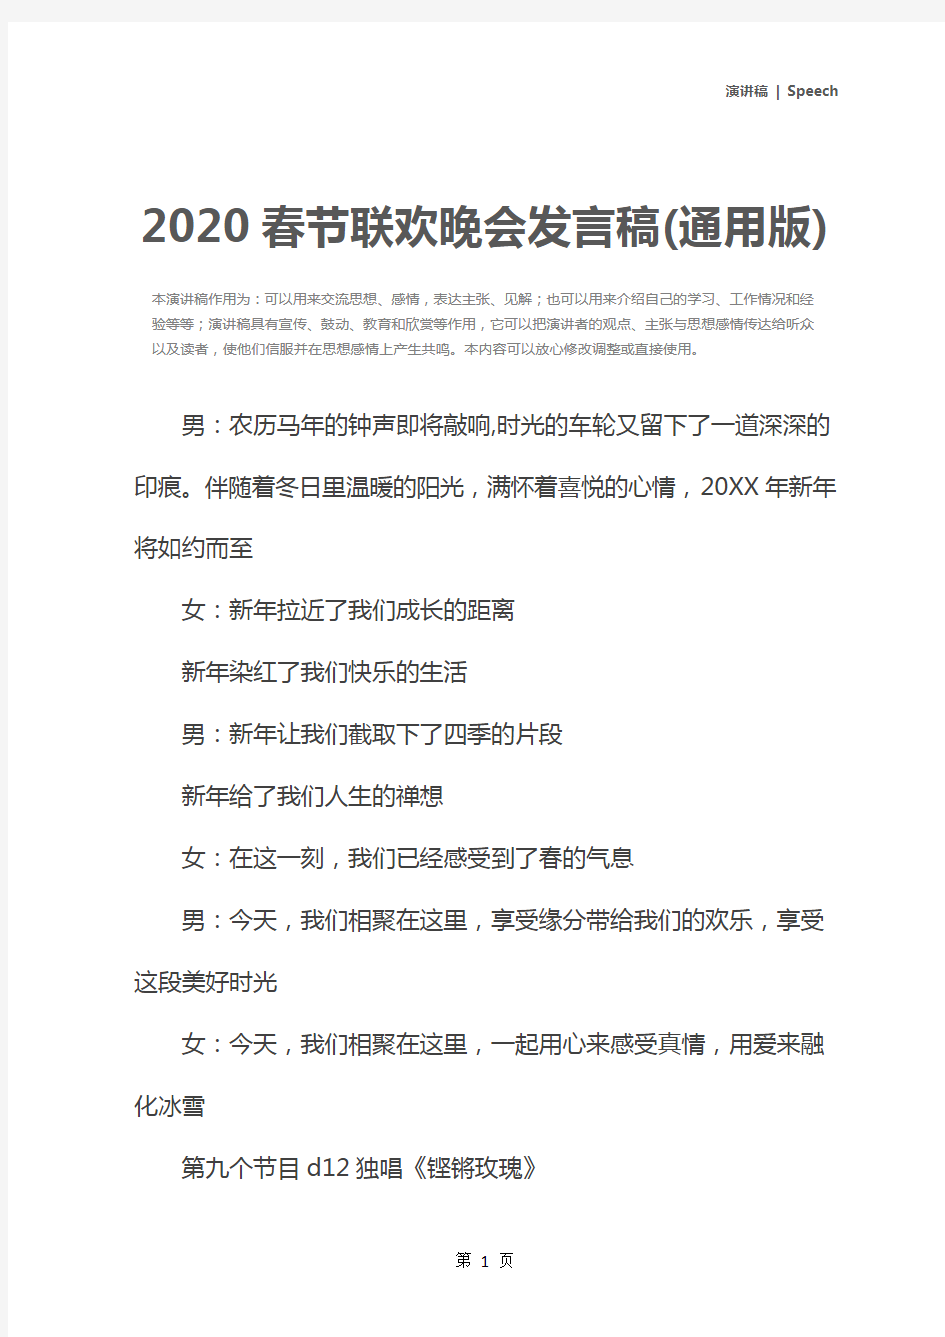 2020春节联欢晚会发言稿(通用版)